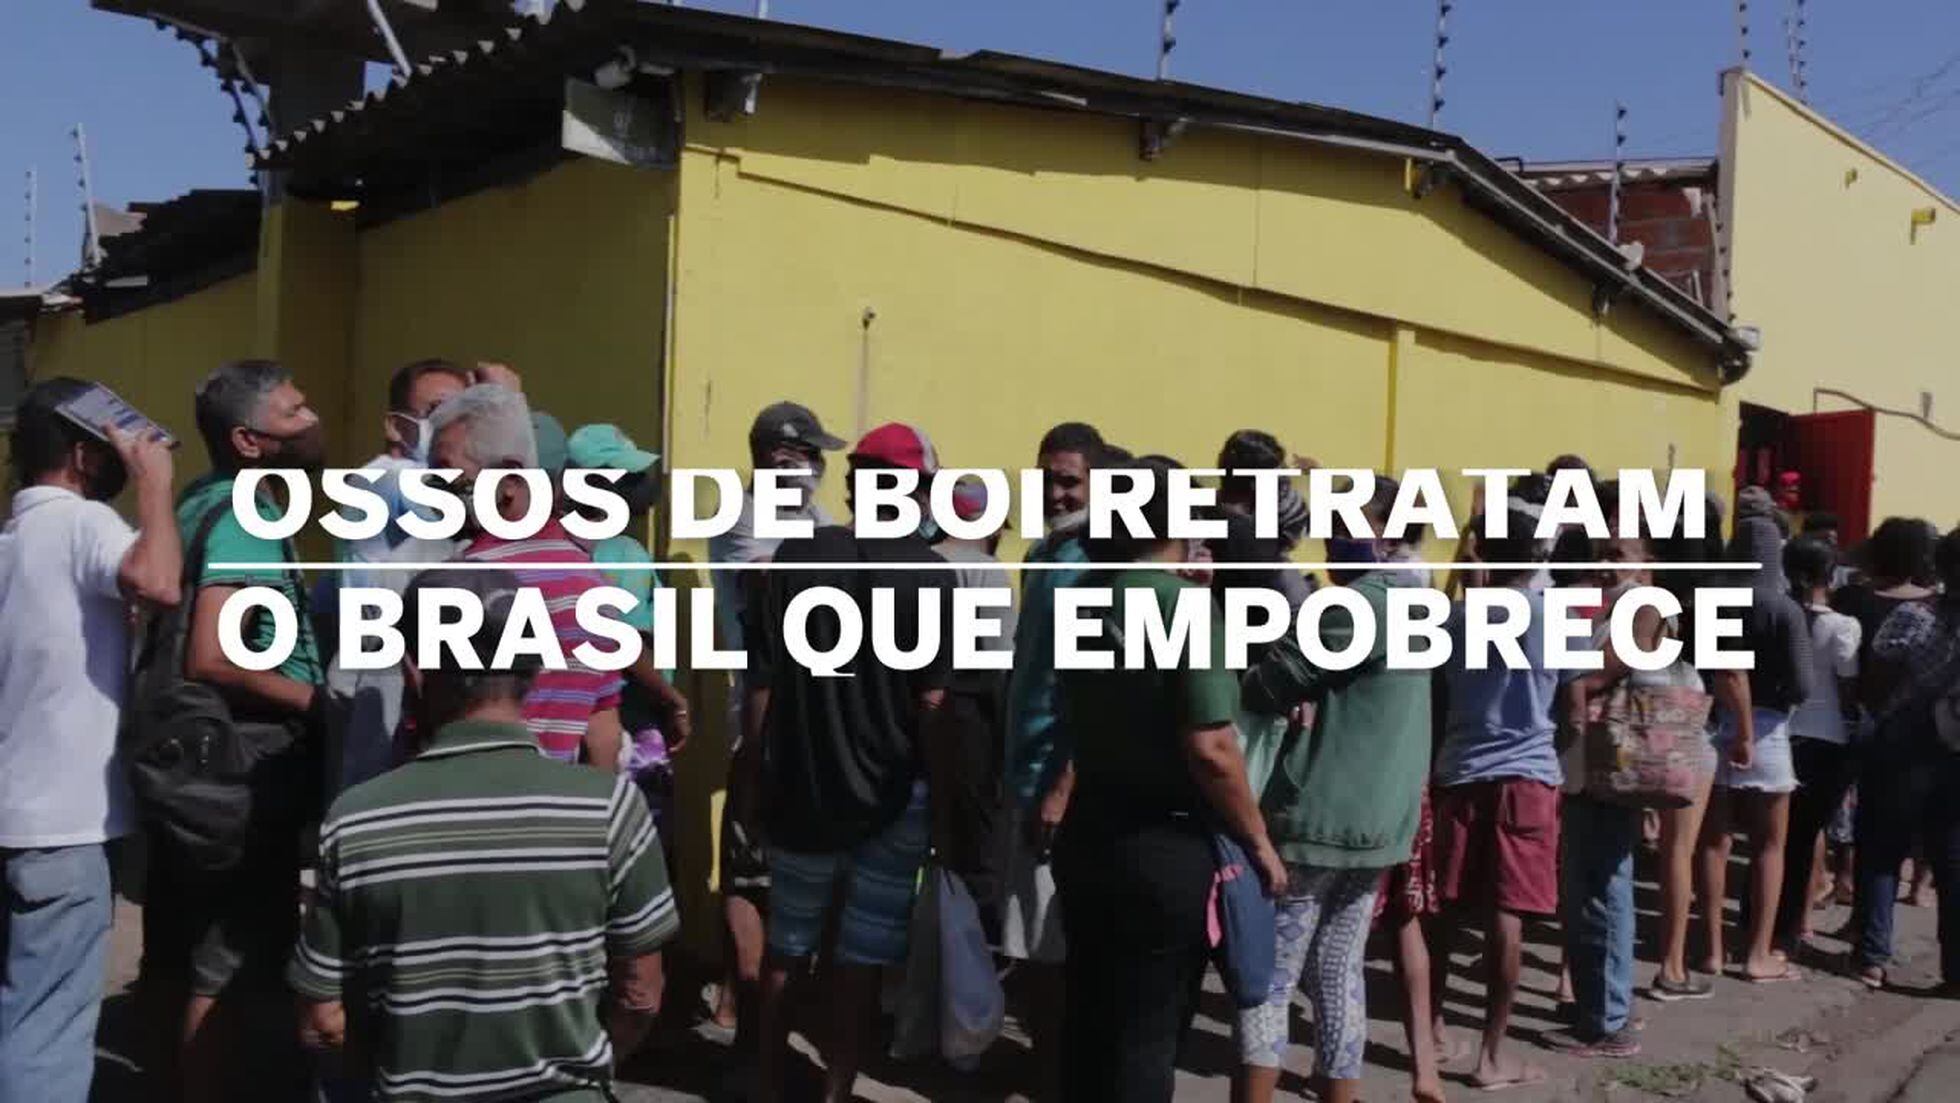 Ossos de boi, arroz e feijão quebrado formam cardápio de um Brasil que empobrece | Atualidade | EL PAÍS Brasil